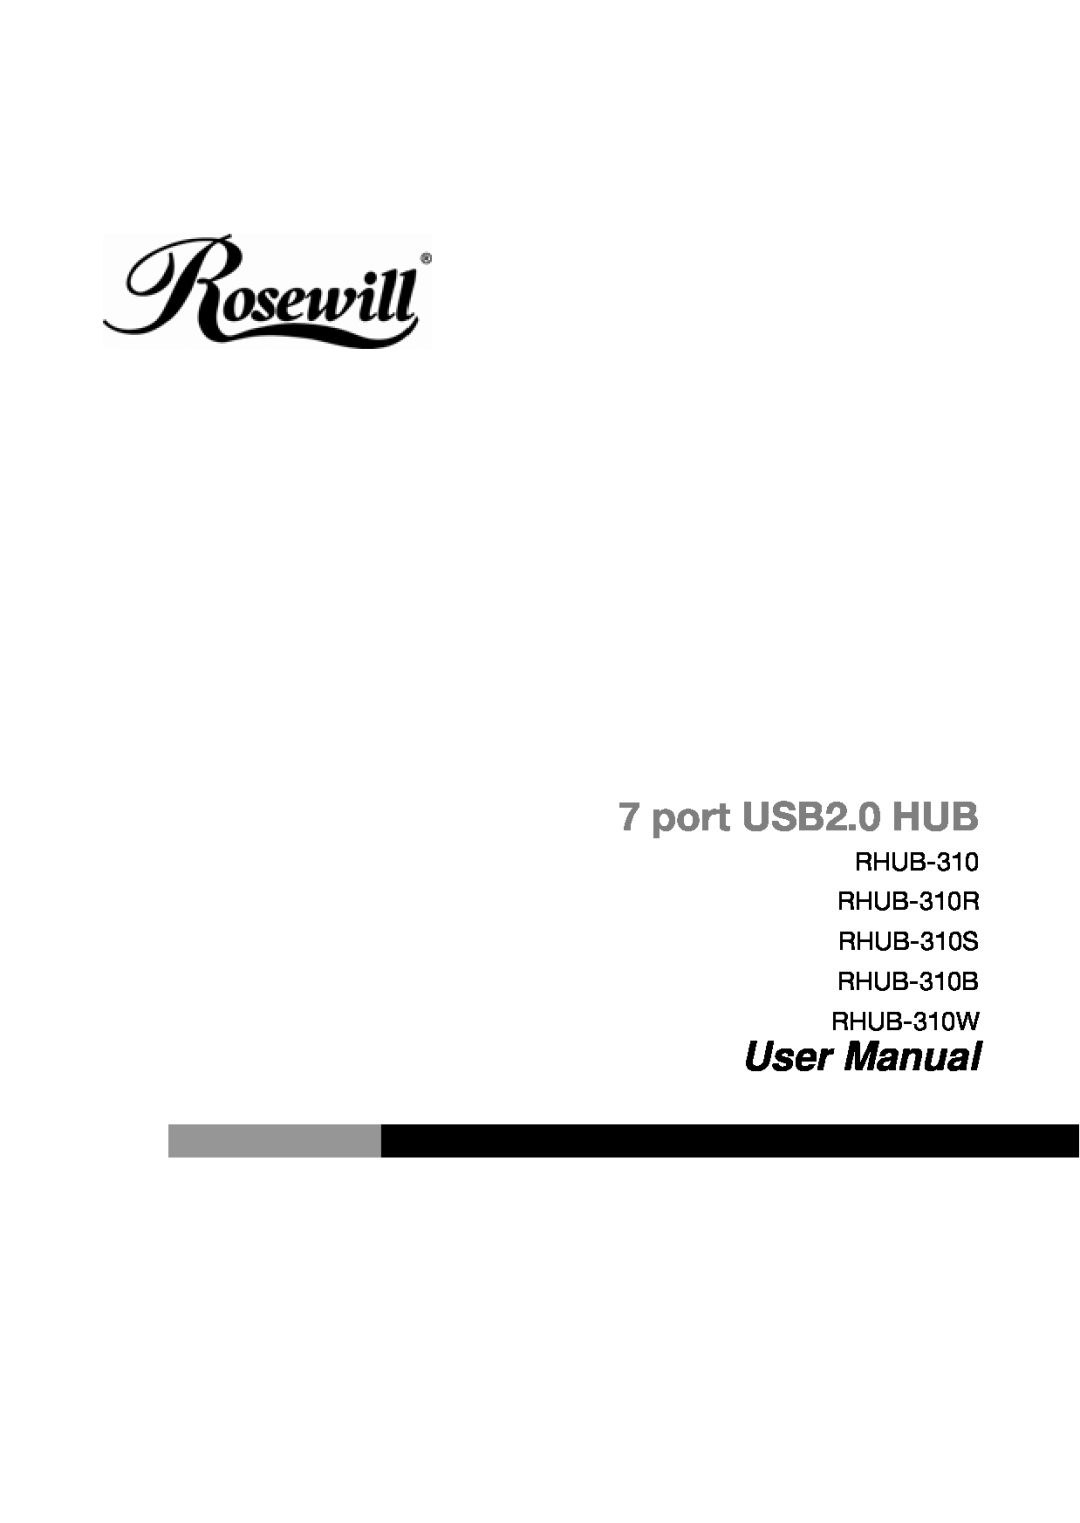 Rosewill RHUB310R, RHUB310W user manual port USB2.0 HUB, User Manual, RHUB-310 RHUB-310R RHUB-310S RHUB-310B RHUB-310W 